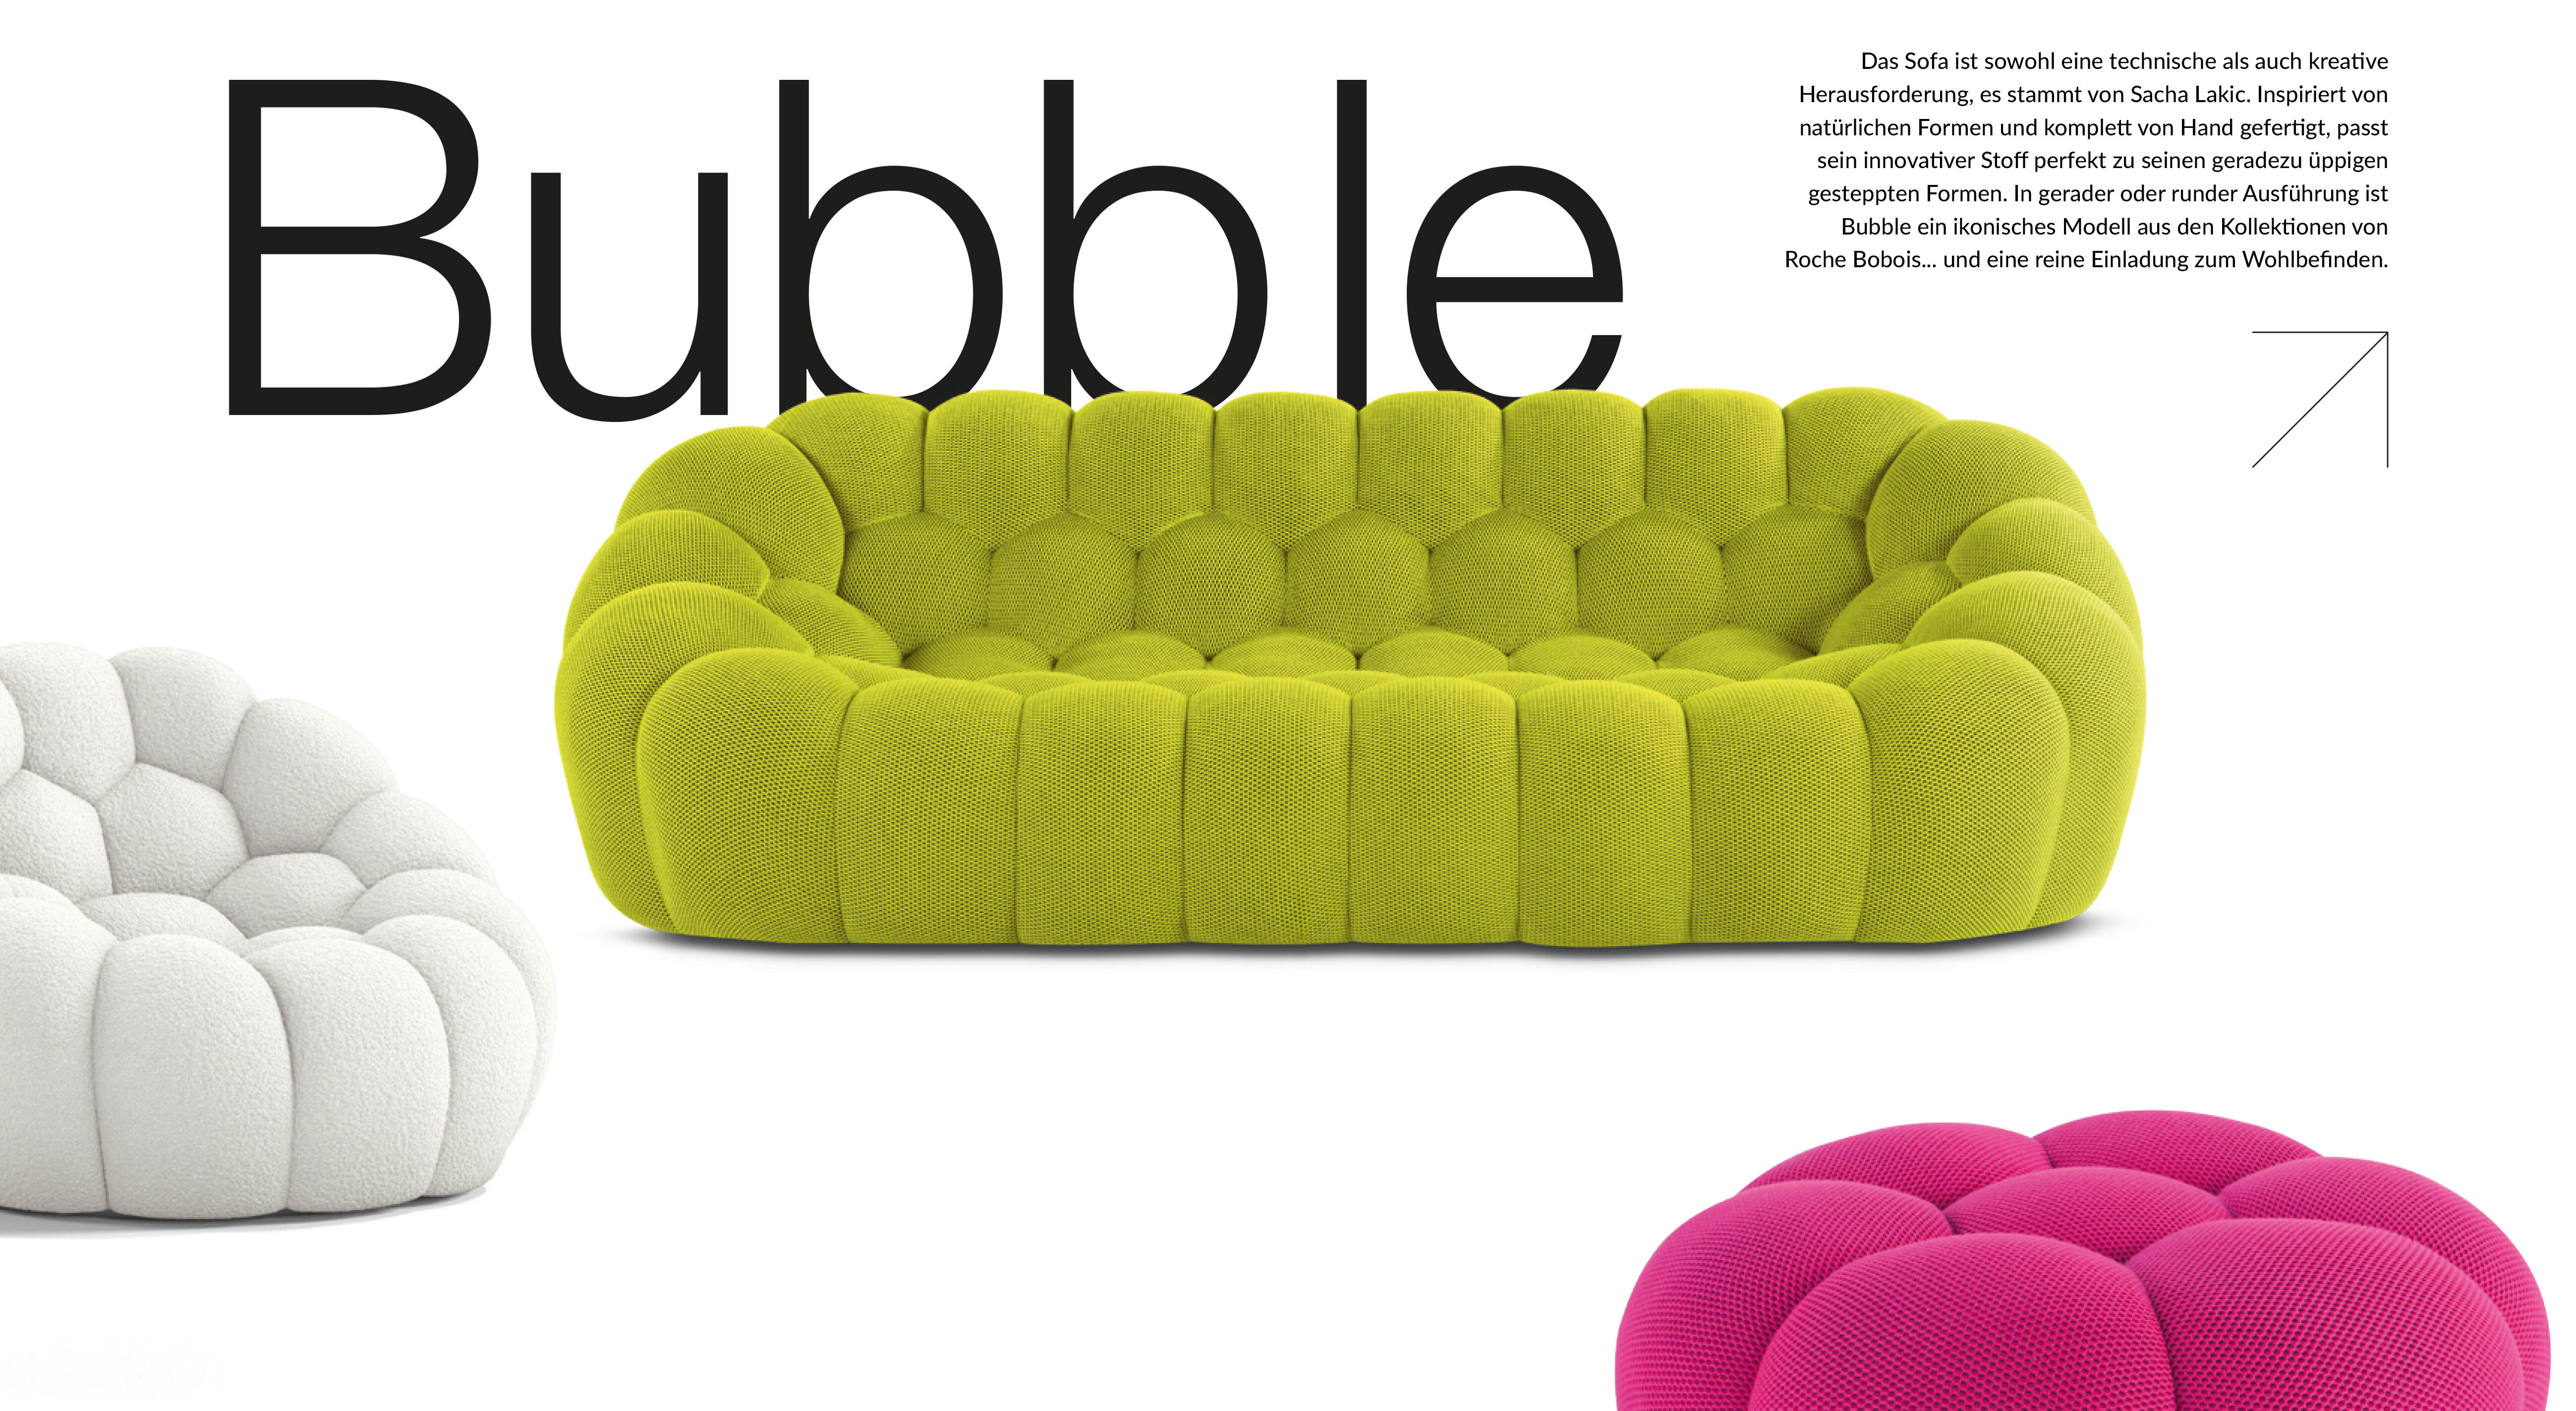 Das Sofa ist sowohl eine technische als auch kreative Herausforderung, es stammt von Sacha Lakic. Inspiriert von natürlichen Formen und komplett von Hand gefertigt, passt sein innovativer Stoff perfekt zu seinen geradezu üppigen gesteppten Formen. In gerader oder runder Ausführung ist Bubble ein ikonisches Modell aus den Kollektionen von Roche Bobois... und eine reine Einladung zum Wohlbefinden.